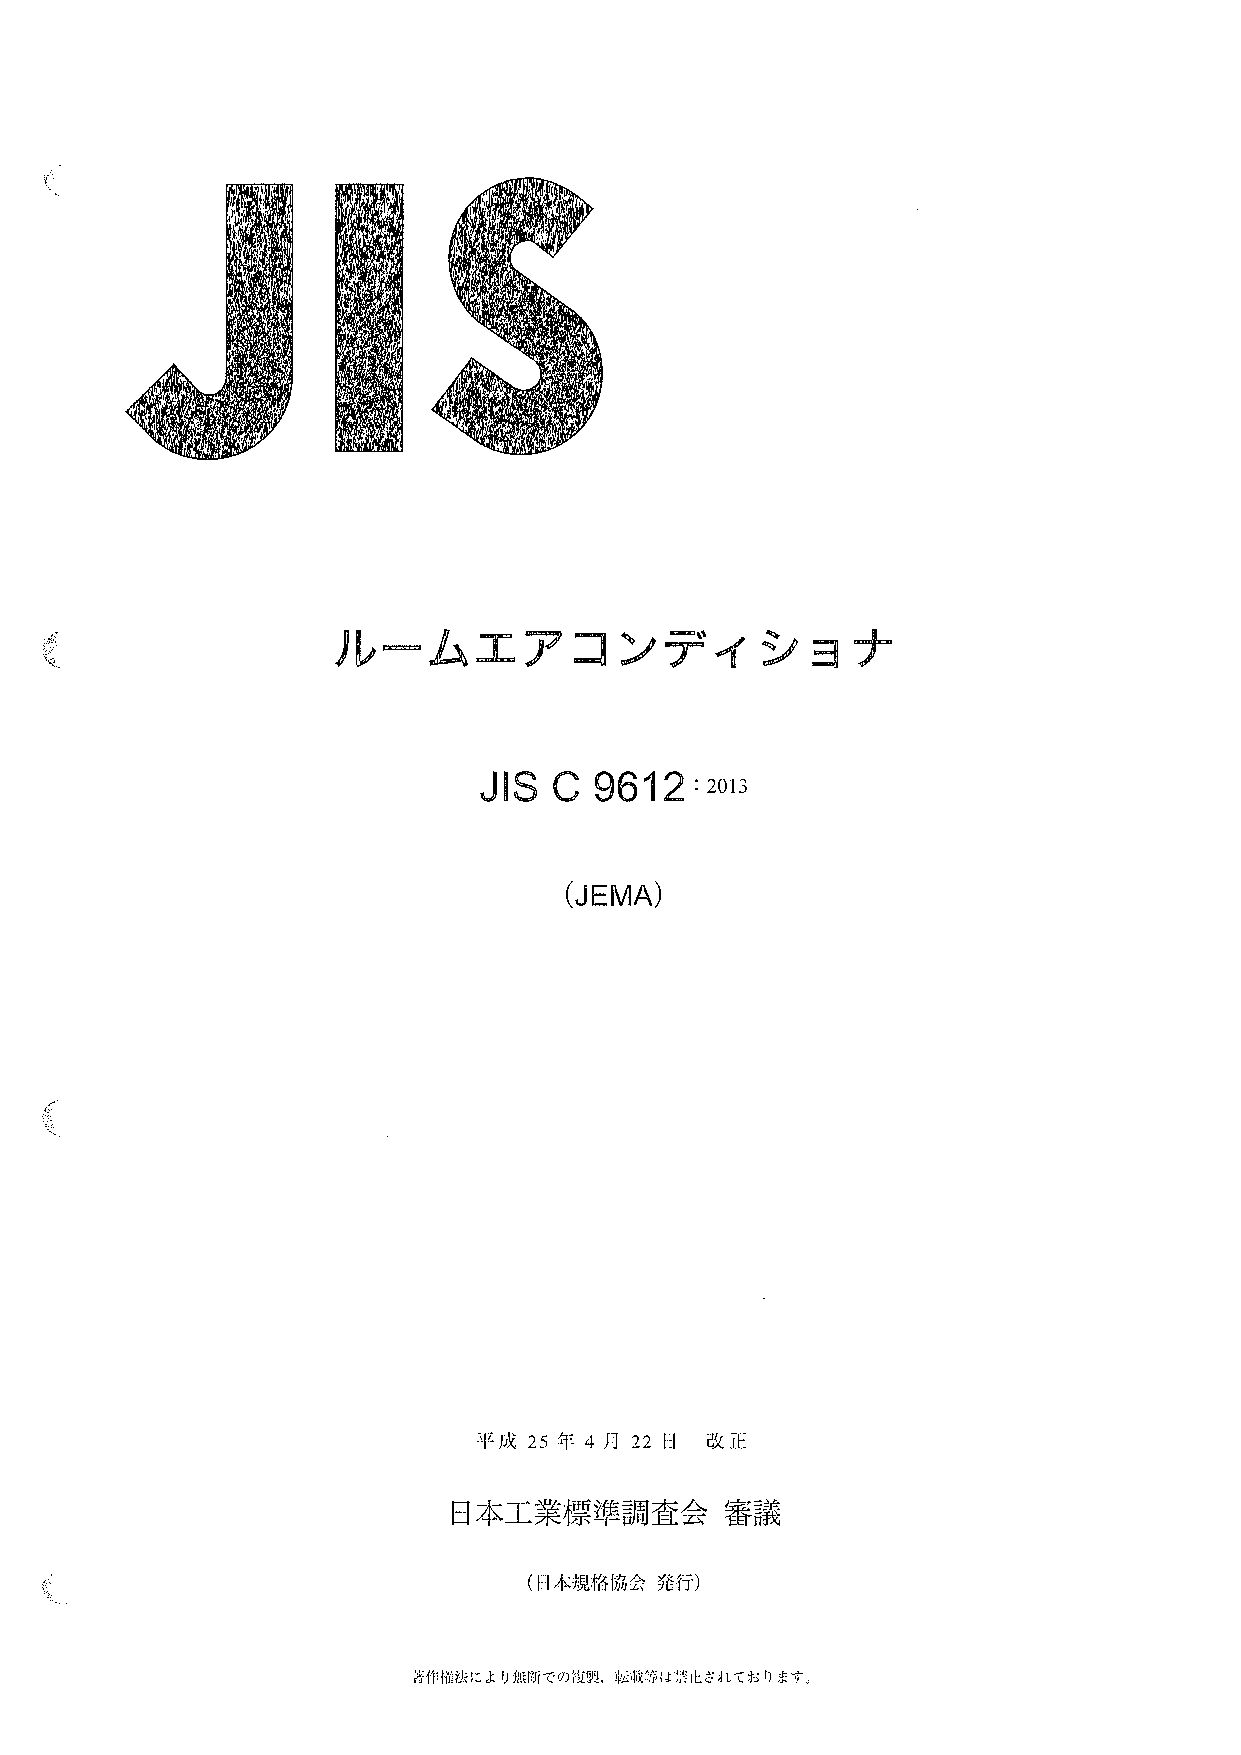 JIS C 9612:2013封面图